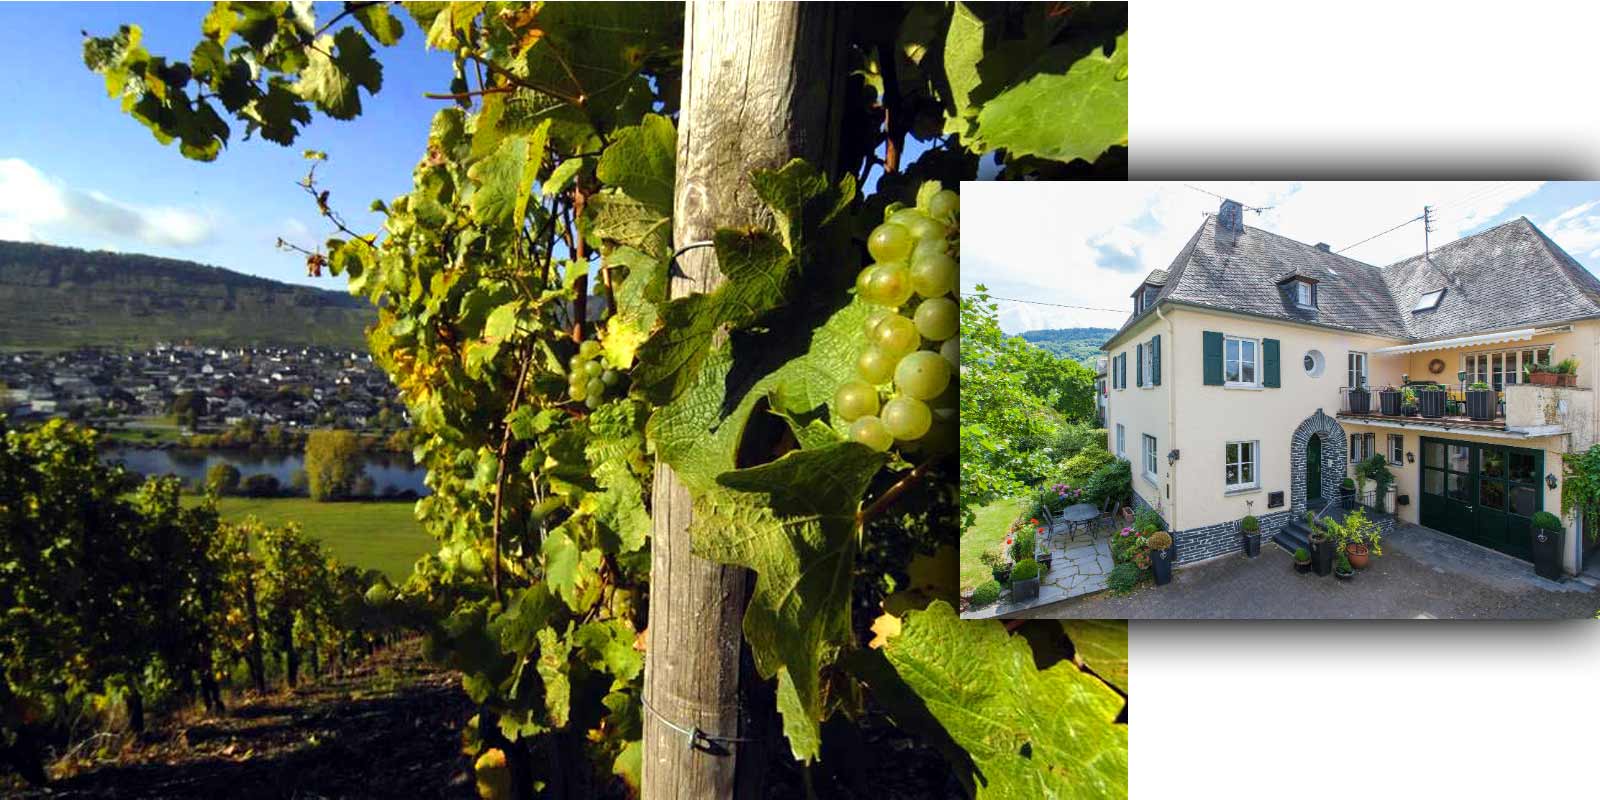 Cantina Grans-Fassian - Regione vinicola della Mosella Gerhard Grans ha rilevato l`azienda vinicola dal padre Matthias nel 1982 e ha ampliato la superficie vitata da 4 ettari a 9,5 ettari attuali, di cui l`88% e coltivato a Riesling, il 10% a Pinot bianco e il 2% a Pinot grigio. Anche le migliori ubicazioni dell`azienda vinicola sono ubicazioni classificate: sono classificate nella categoria di coltivazione piu alta.